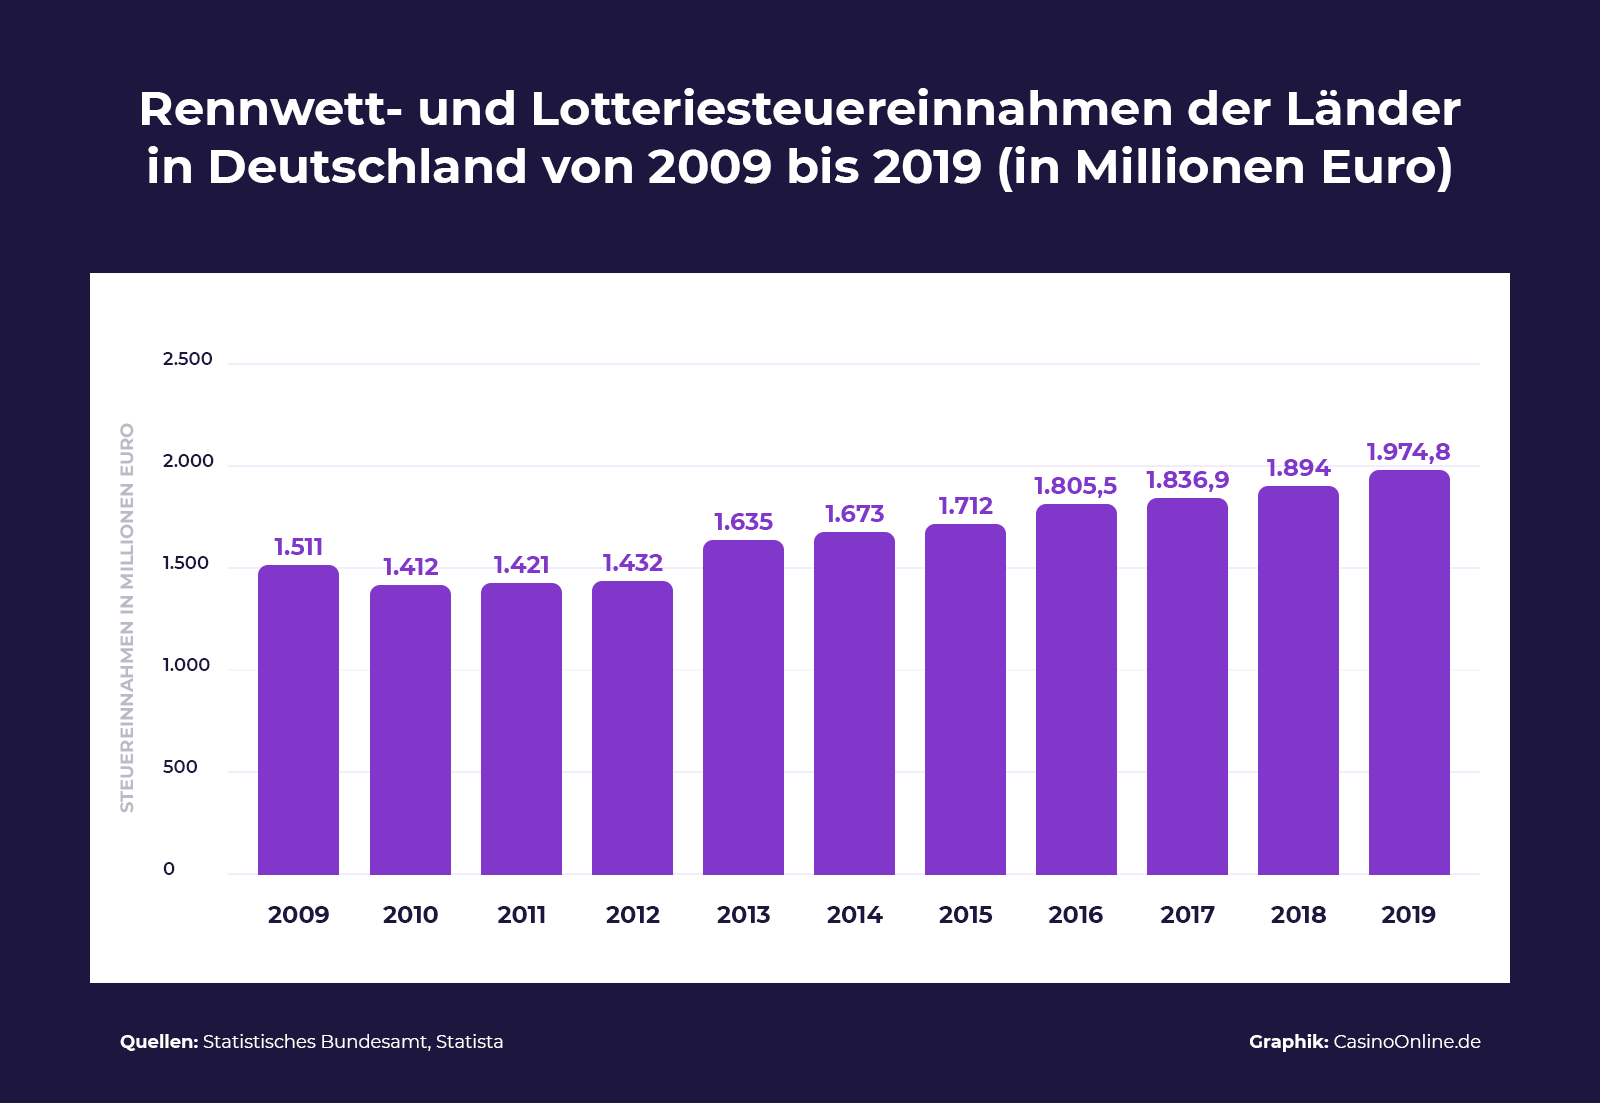 Steuereinnahmen der Länder in Deutschland durch Abgaben von Spielbanken in den Jahren 2009 bis 2019 in Millionen Euro